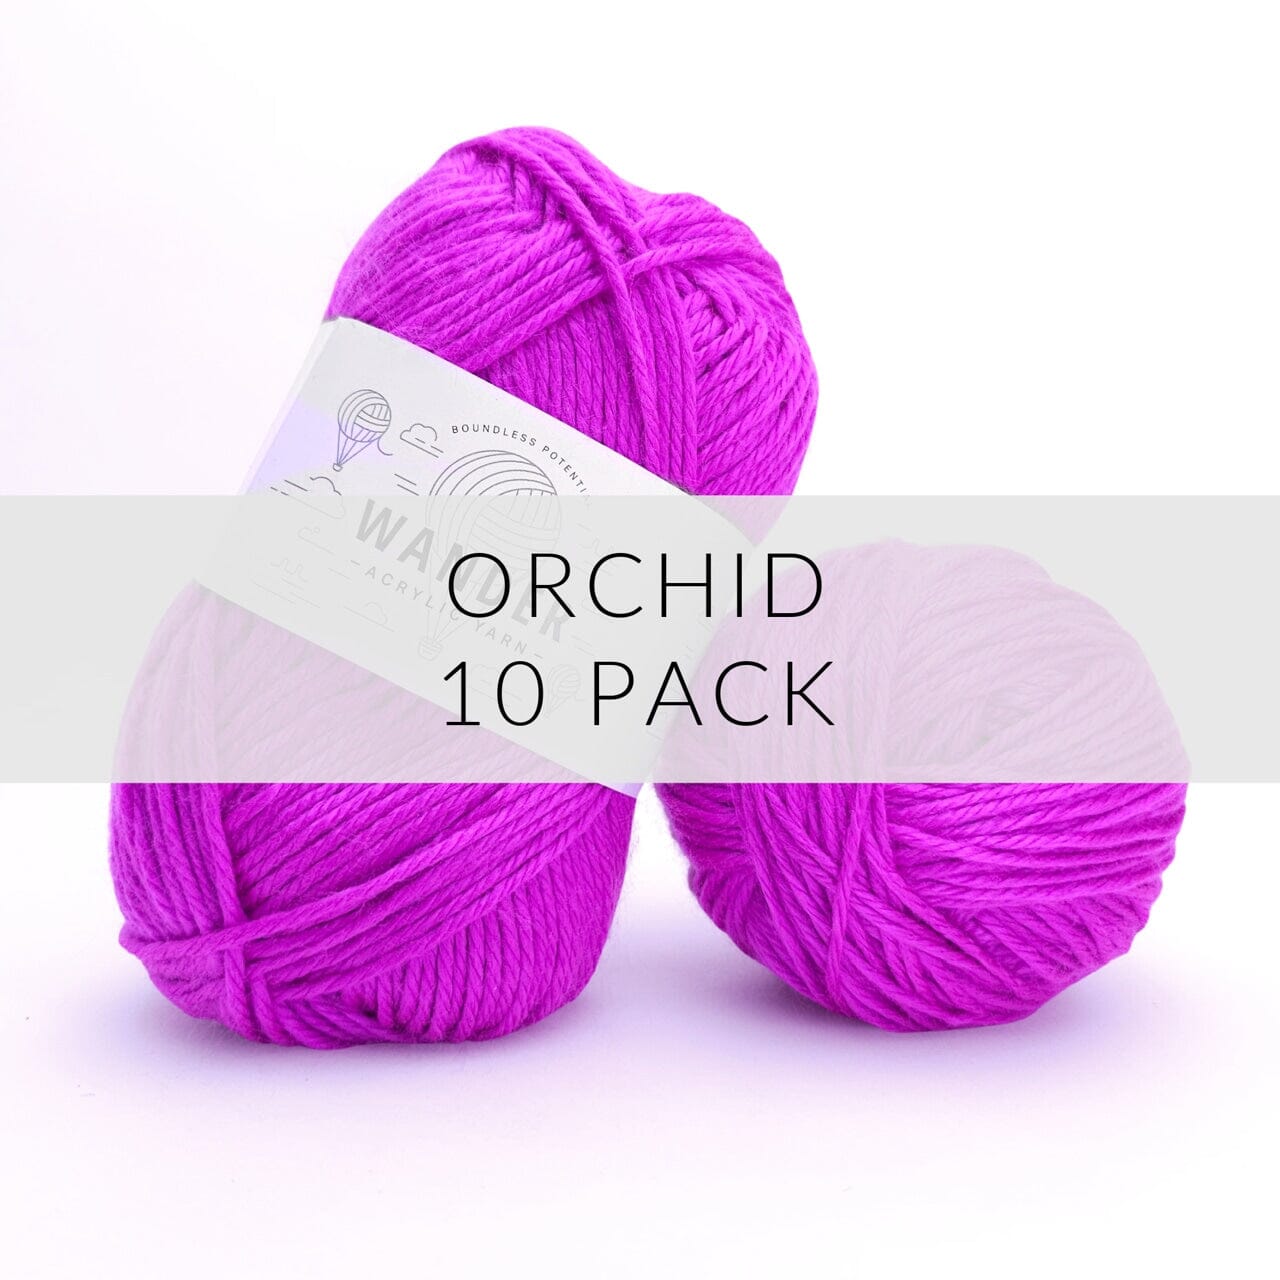 10 Pack Wander Acrylic Yarn Yarn FurlsCrochet Orchid 